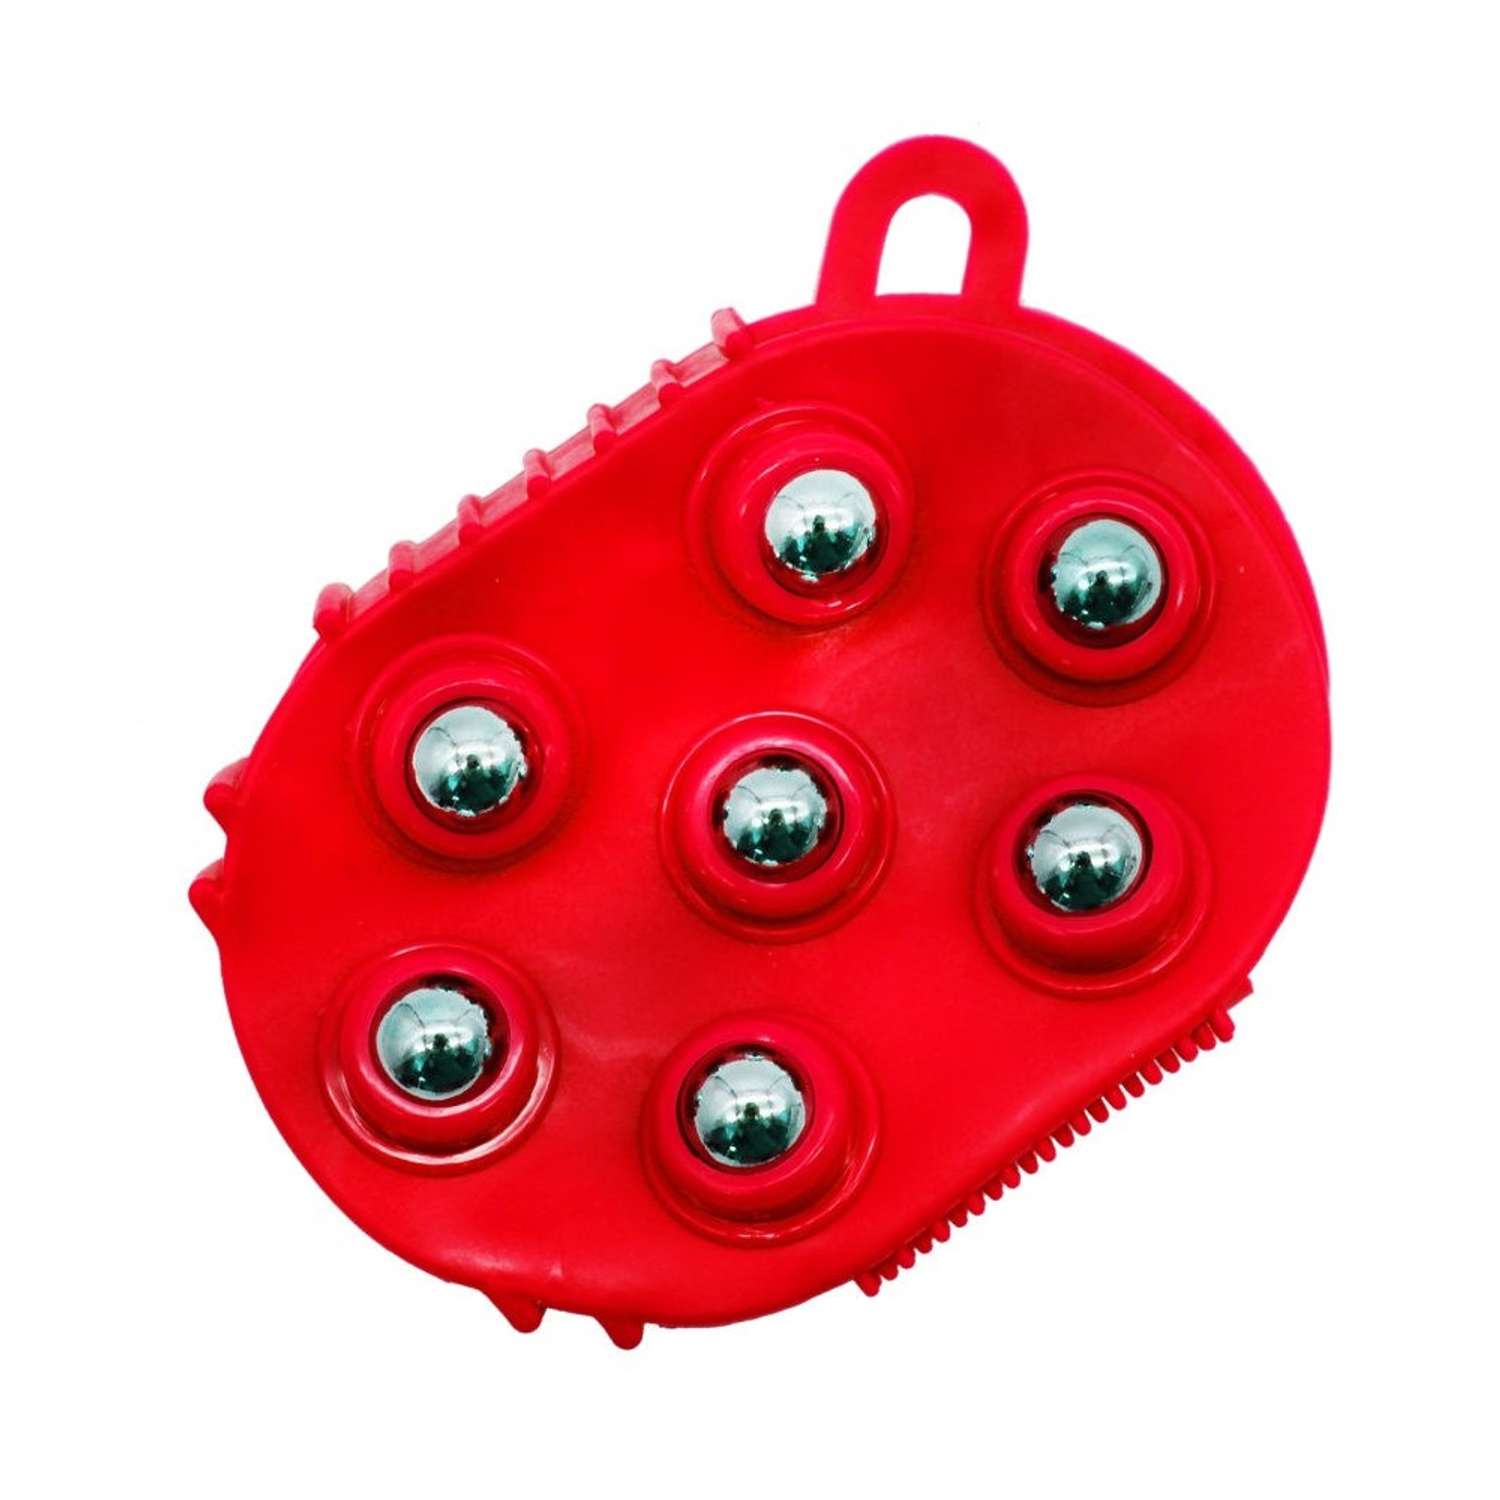 Массажер Uniglodis с 7 массажными шариками красный - фото 1